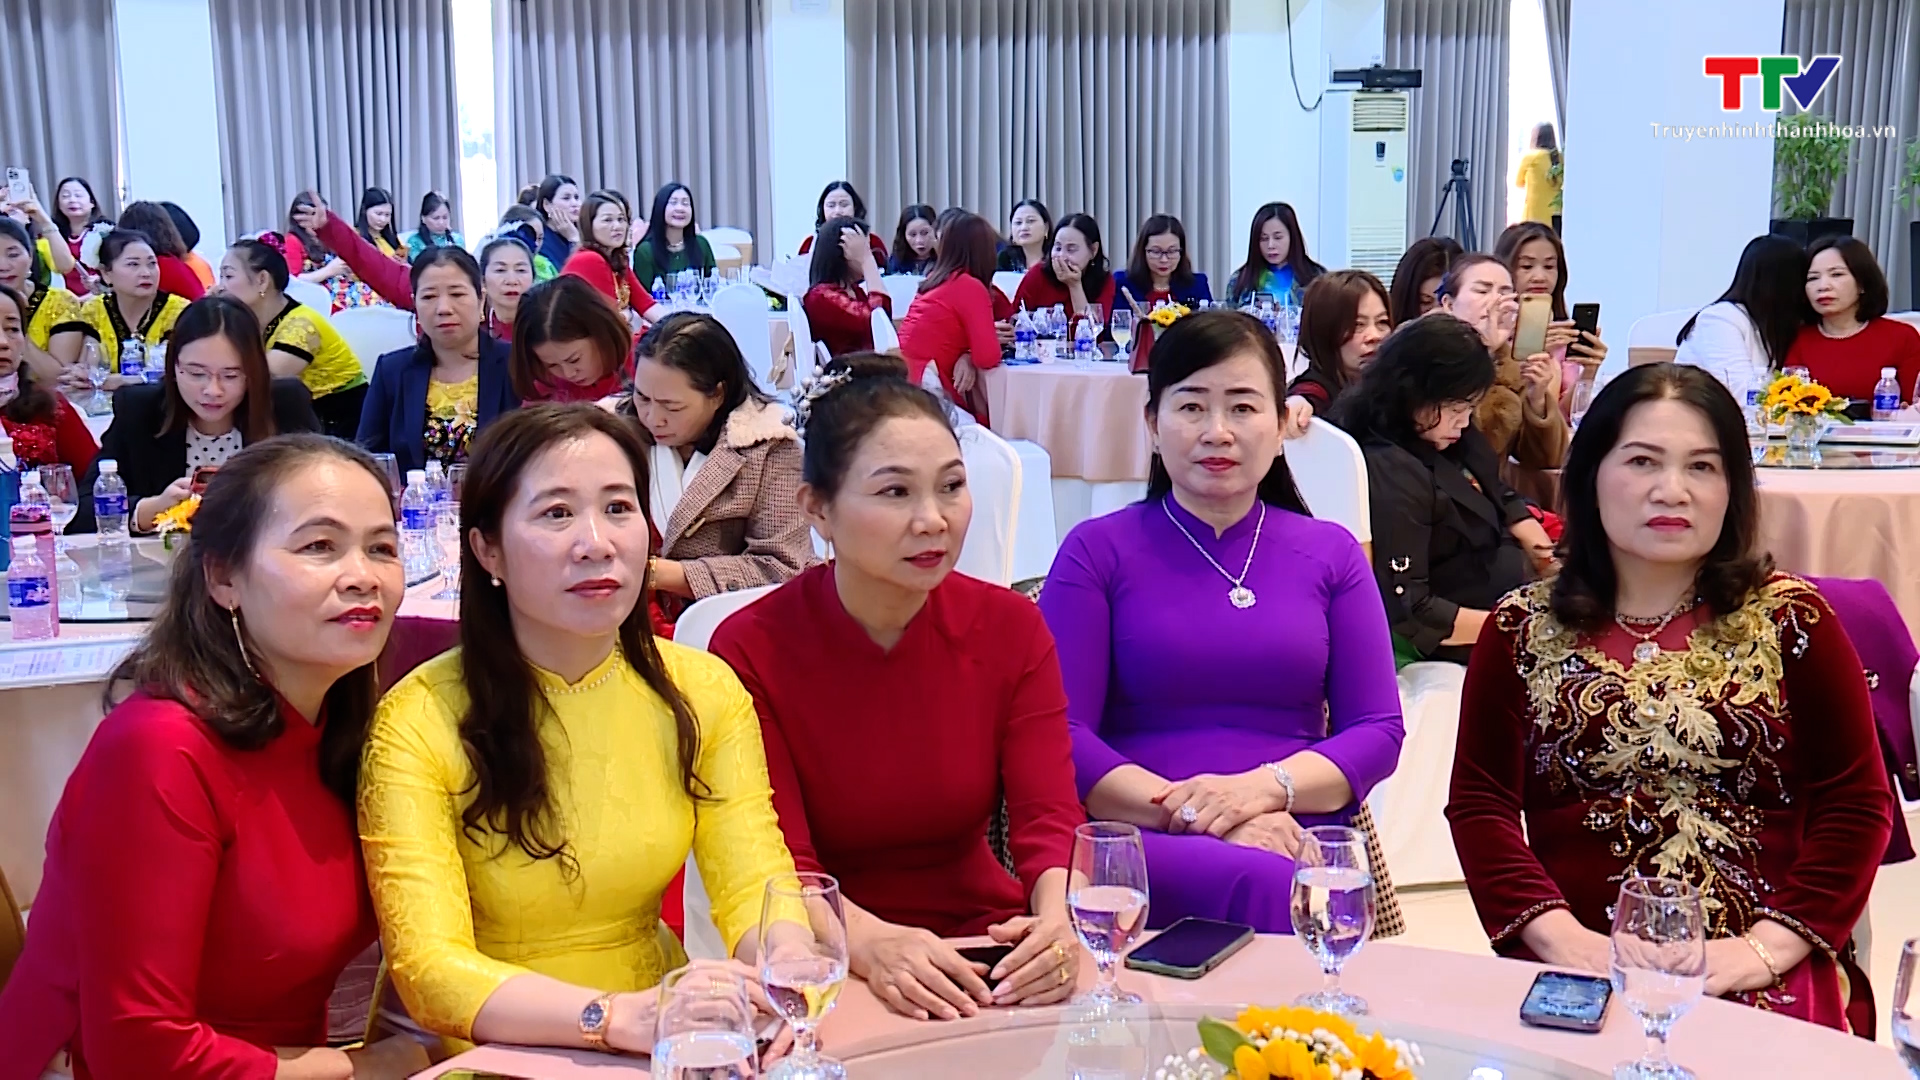 Hiệp hội Doanh nhân nữ Thanh Hoá triển khai nhiệm vụ năm 2023 - Ảnh 3.